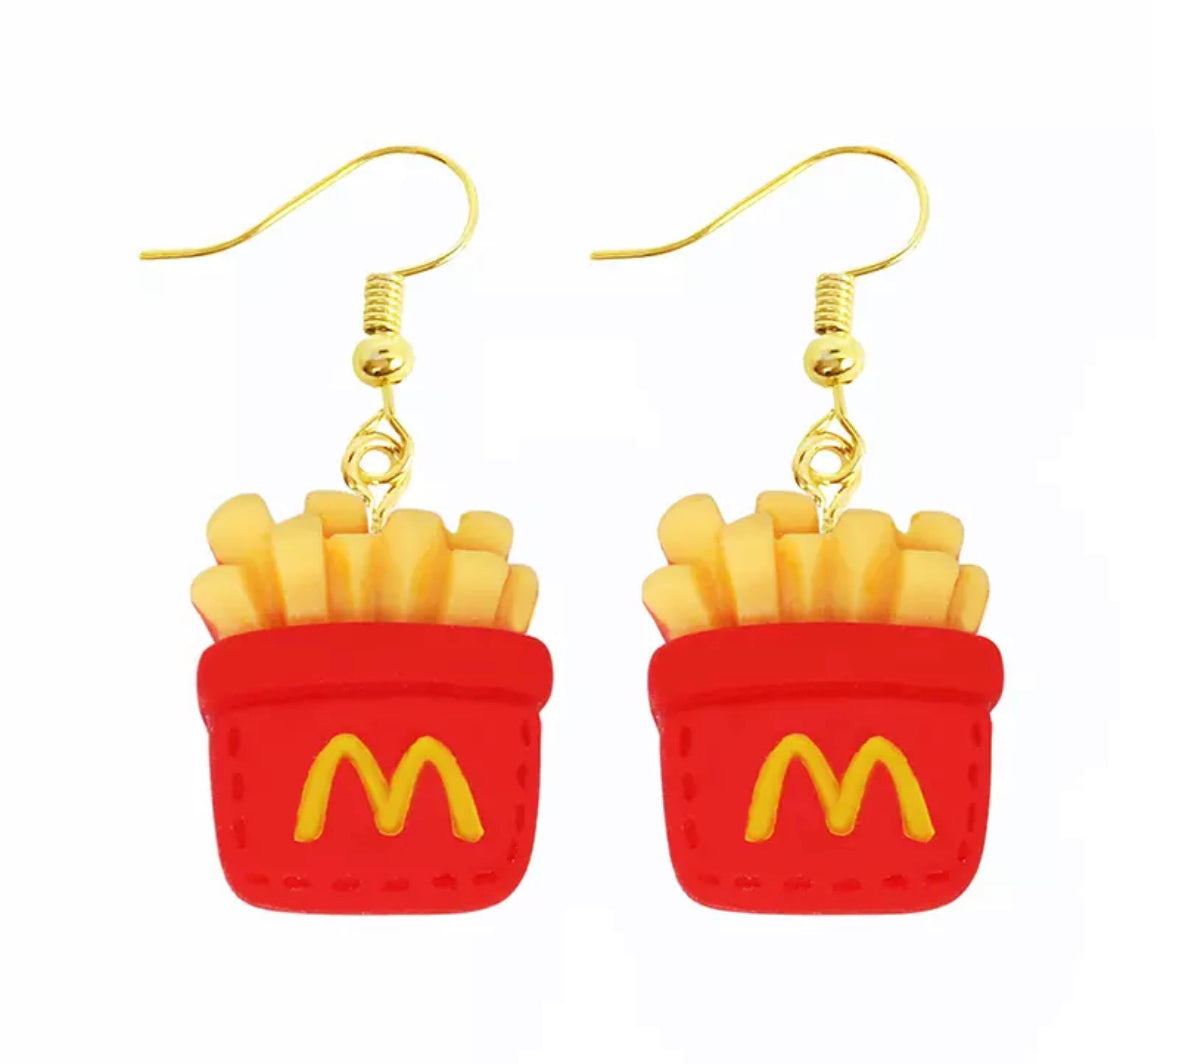 McD’s Fries